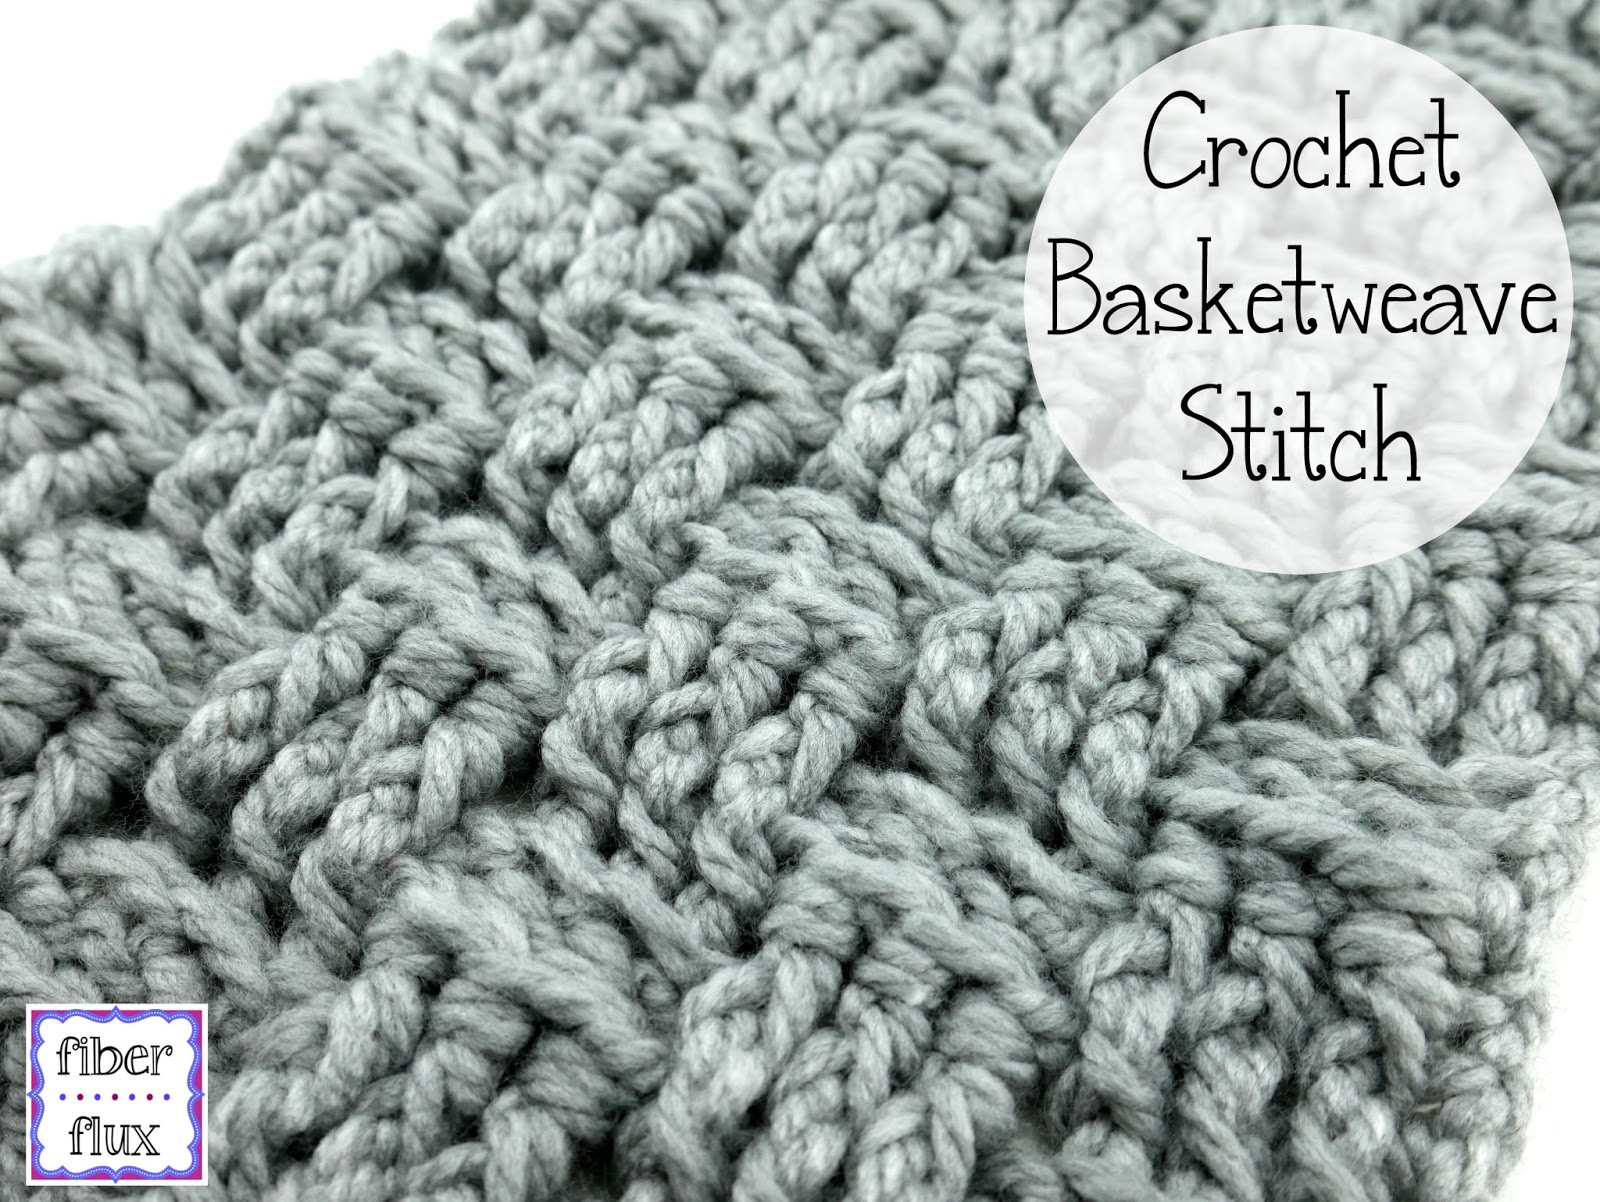 Easy Basket Weave Crochet Pattern Fiber Flux How To Crochet The Basketweave Stitch